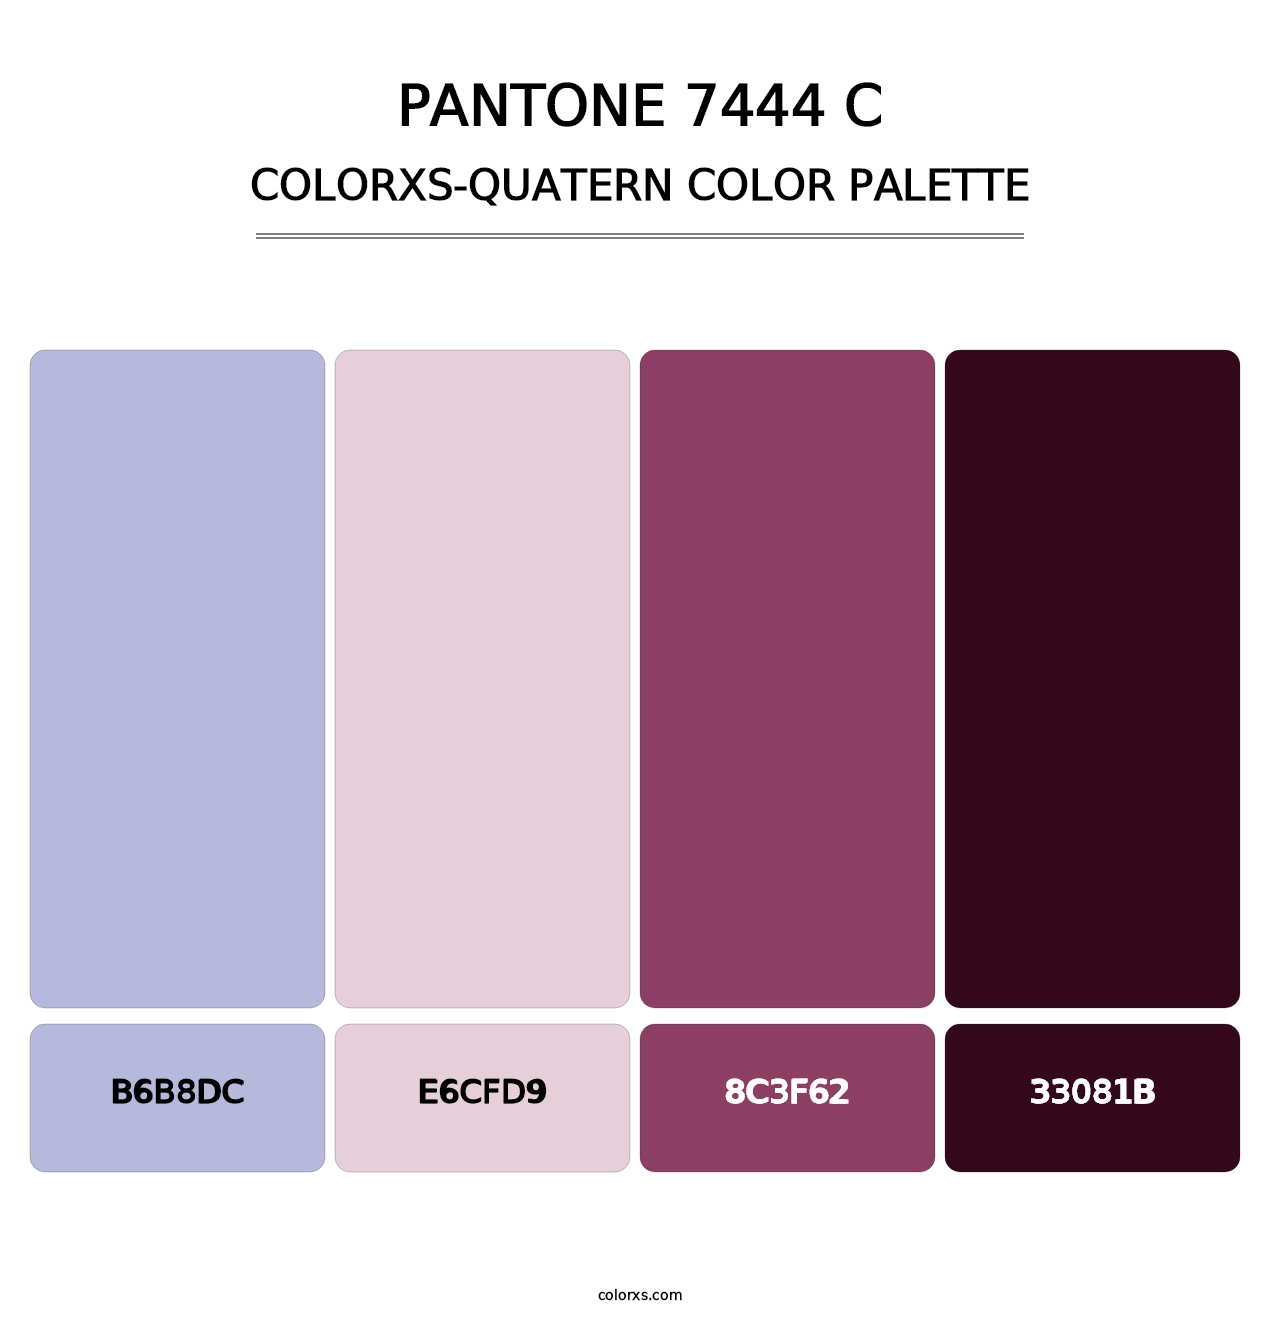 PANTONE 7444 C - Colorxs Quatern Palette